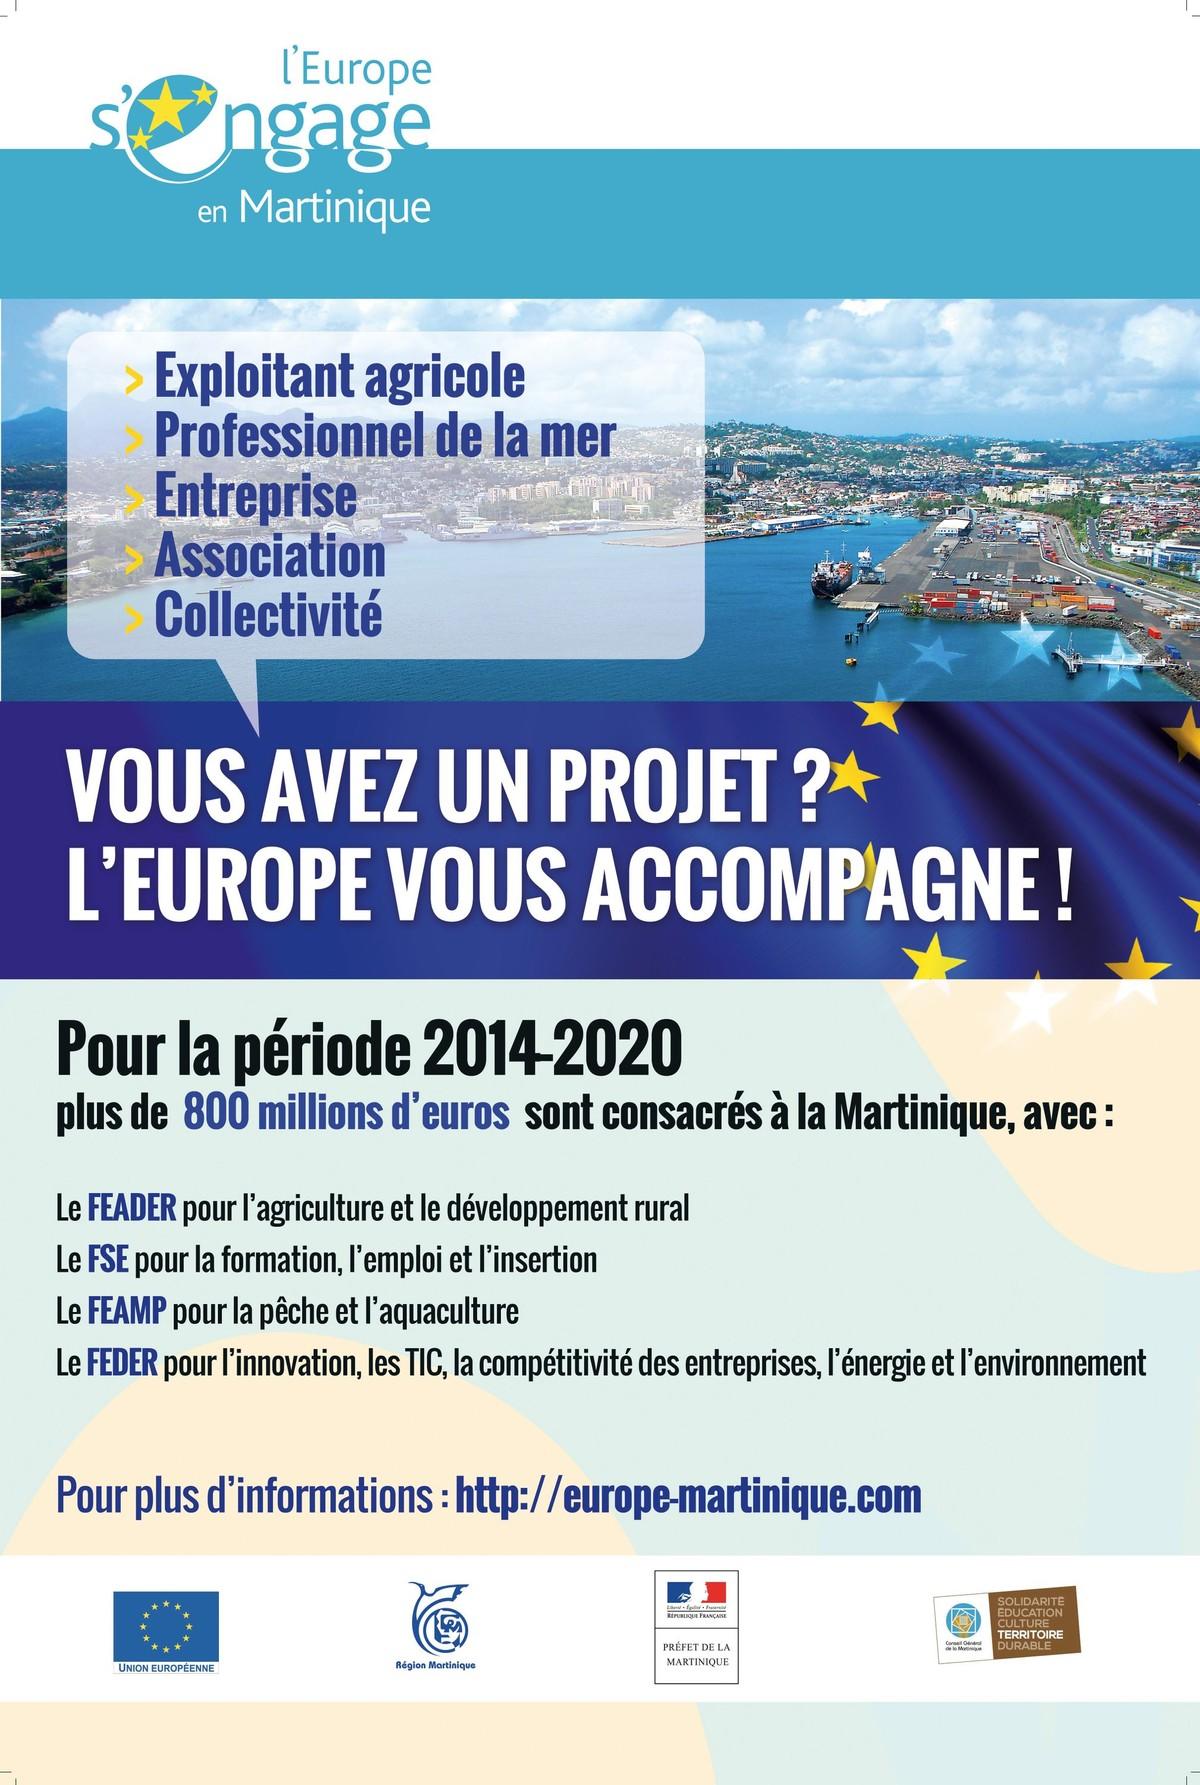 Les actions de l'UE en Martinique pour la période 2014-2020